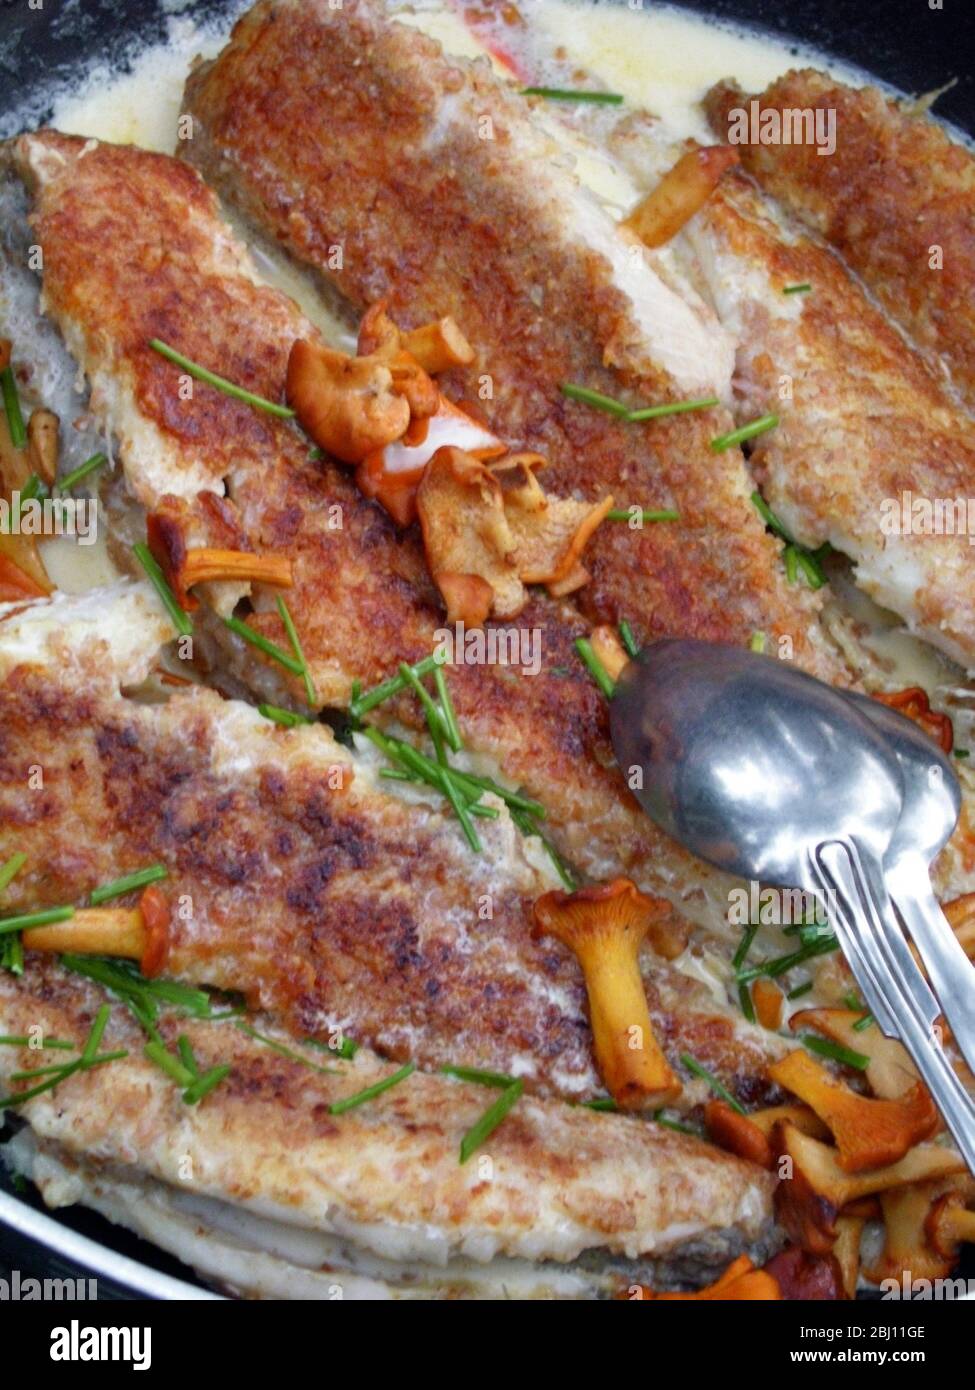 Pesce fresco pescato in padella fritto con salsa di crema alle chanterelle - Foto Stock